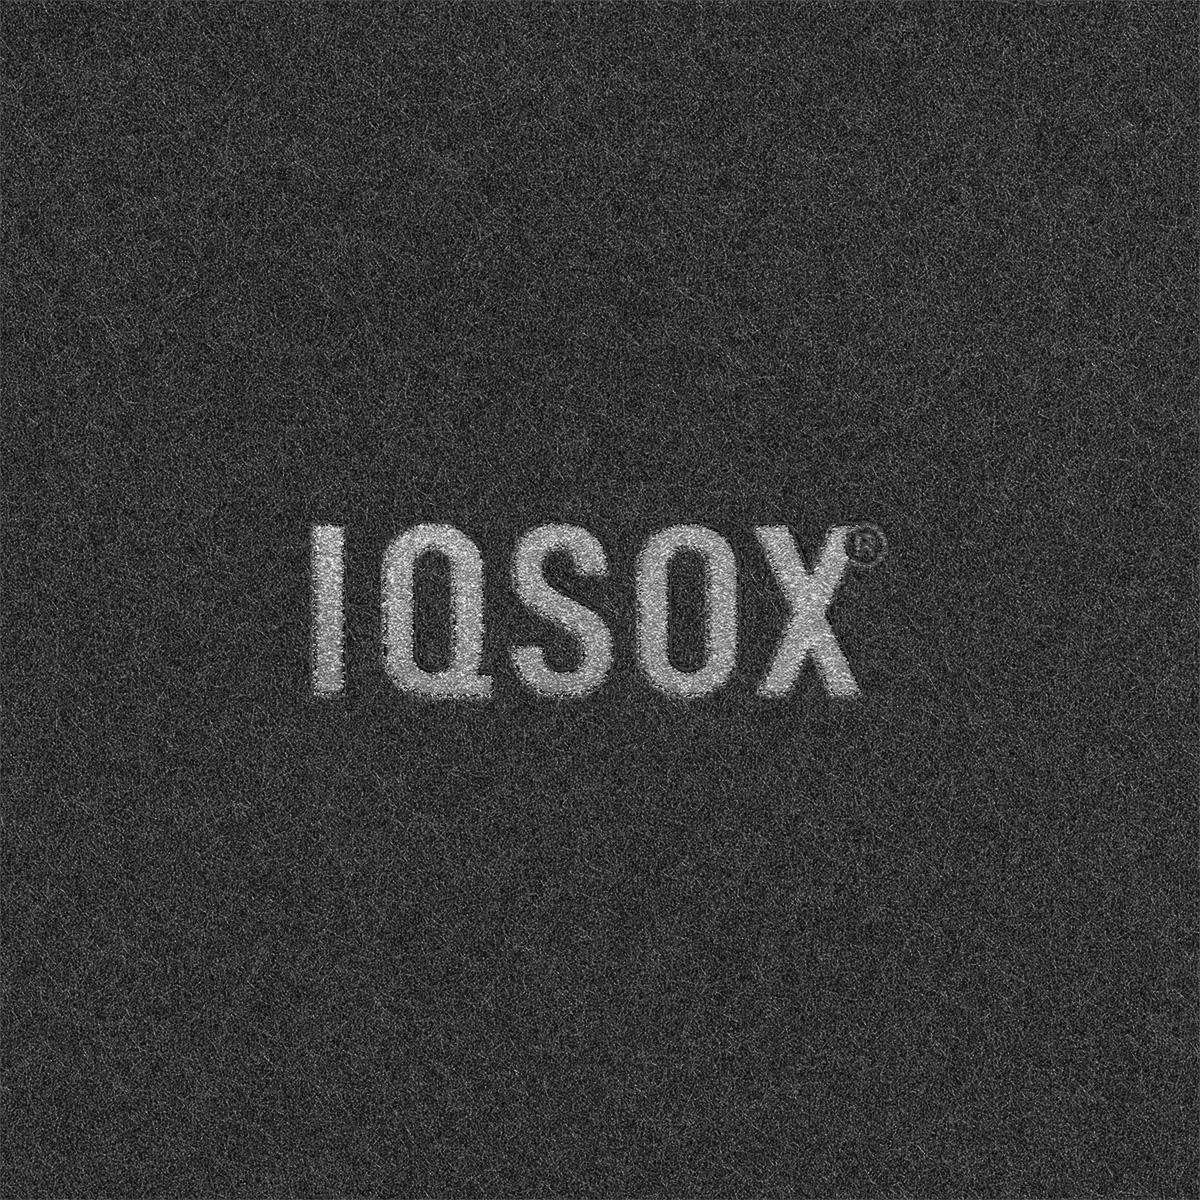 Iqsox logo